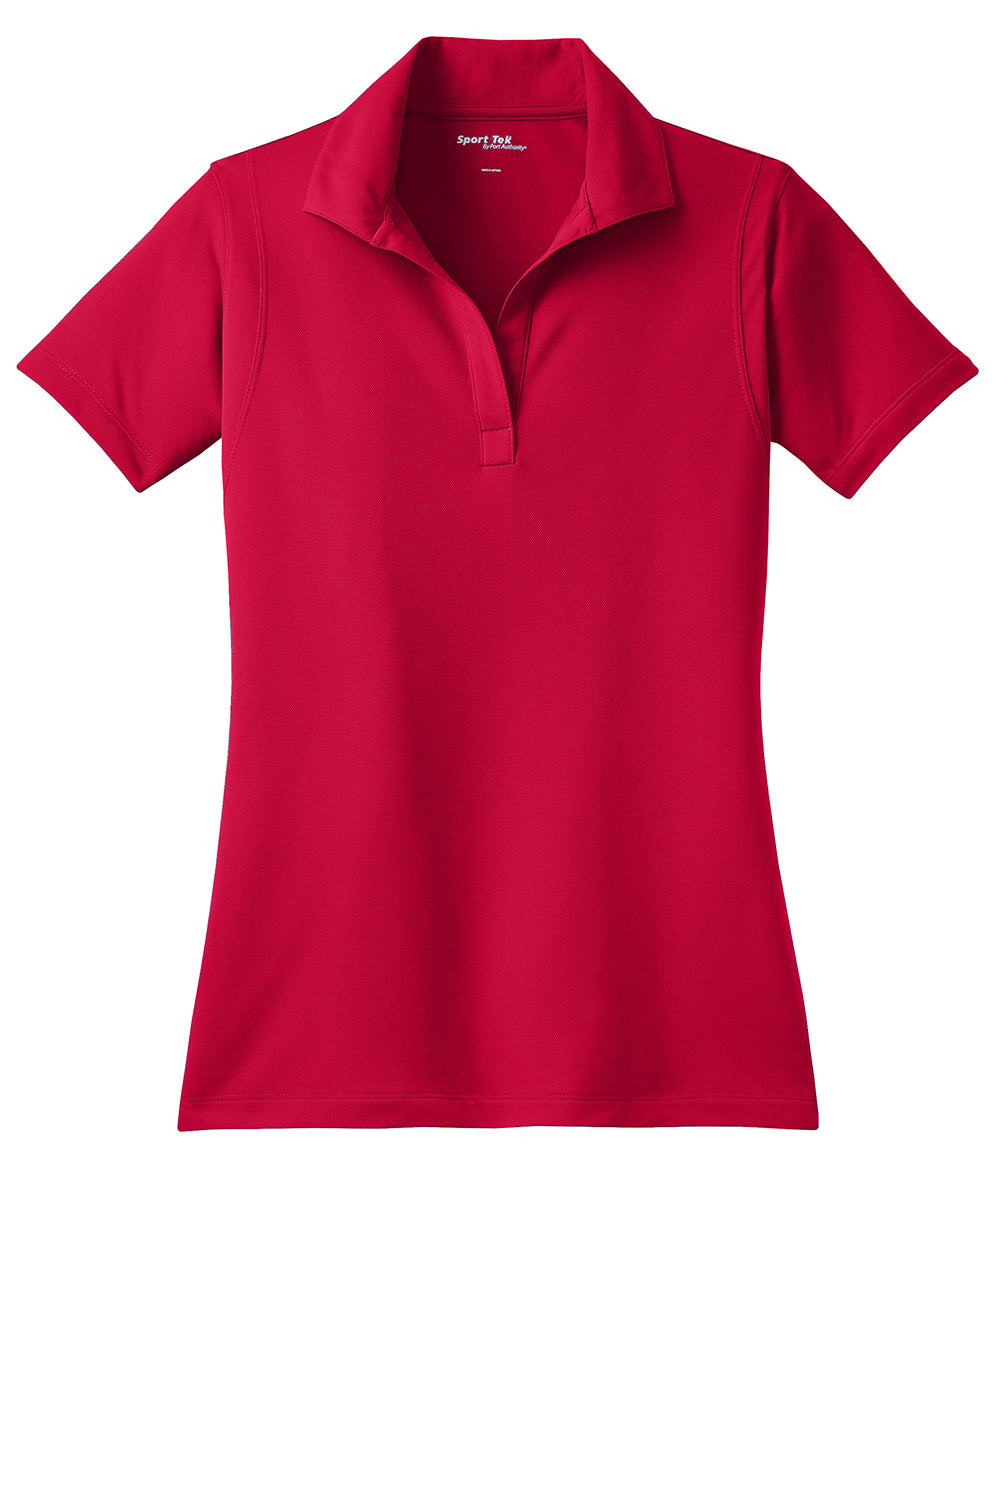 Sport-Tek LST650 Womens Sport-Wick Moisture Wicking Short Sleeve Polo Shirt Deep Red Flat Front